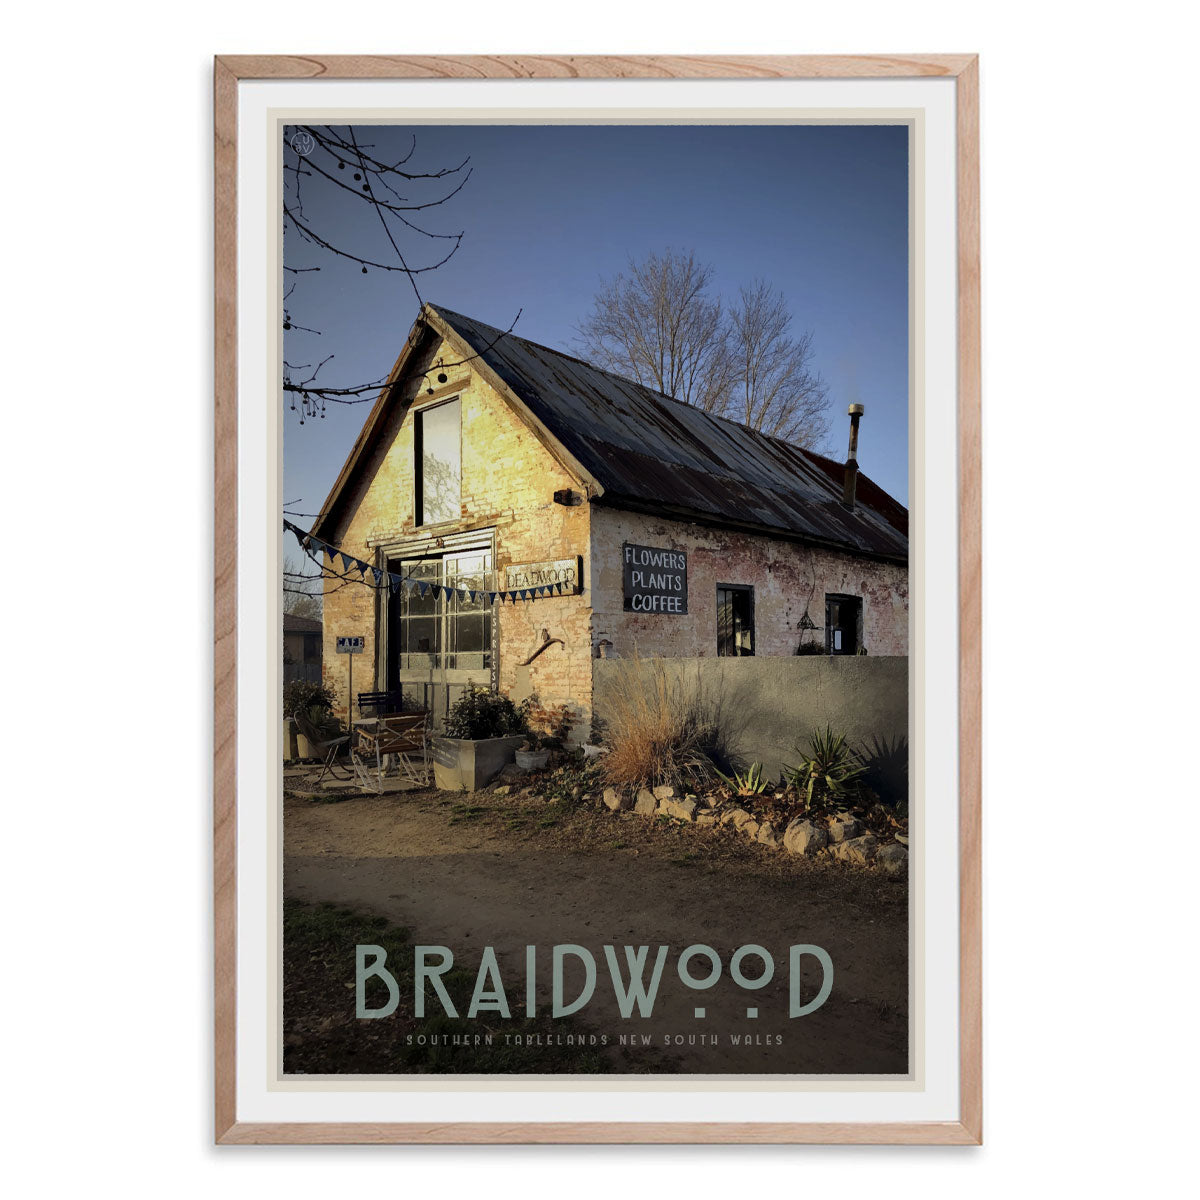 Braidwood cafe oak framed vintage travel style poster. Original design by Places We Luv